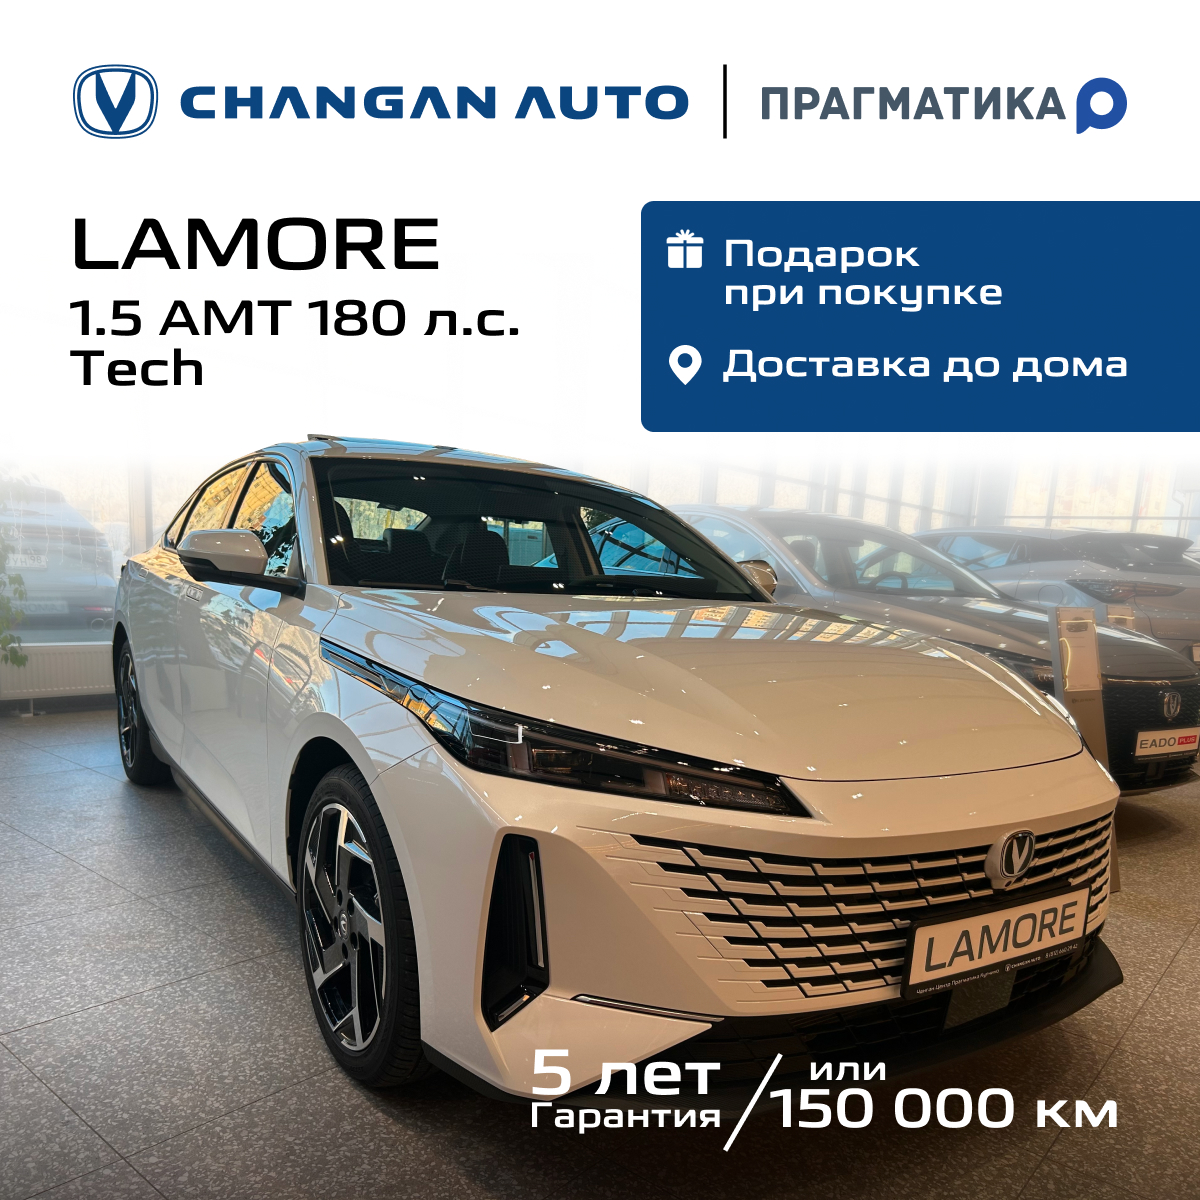 Автомобиль Changan Lamore 1.5 AMT Tech 2023 Белый - купить в Москве, цены на Мегамаркет | 600018453846